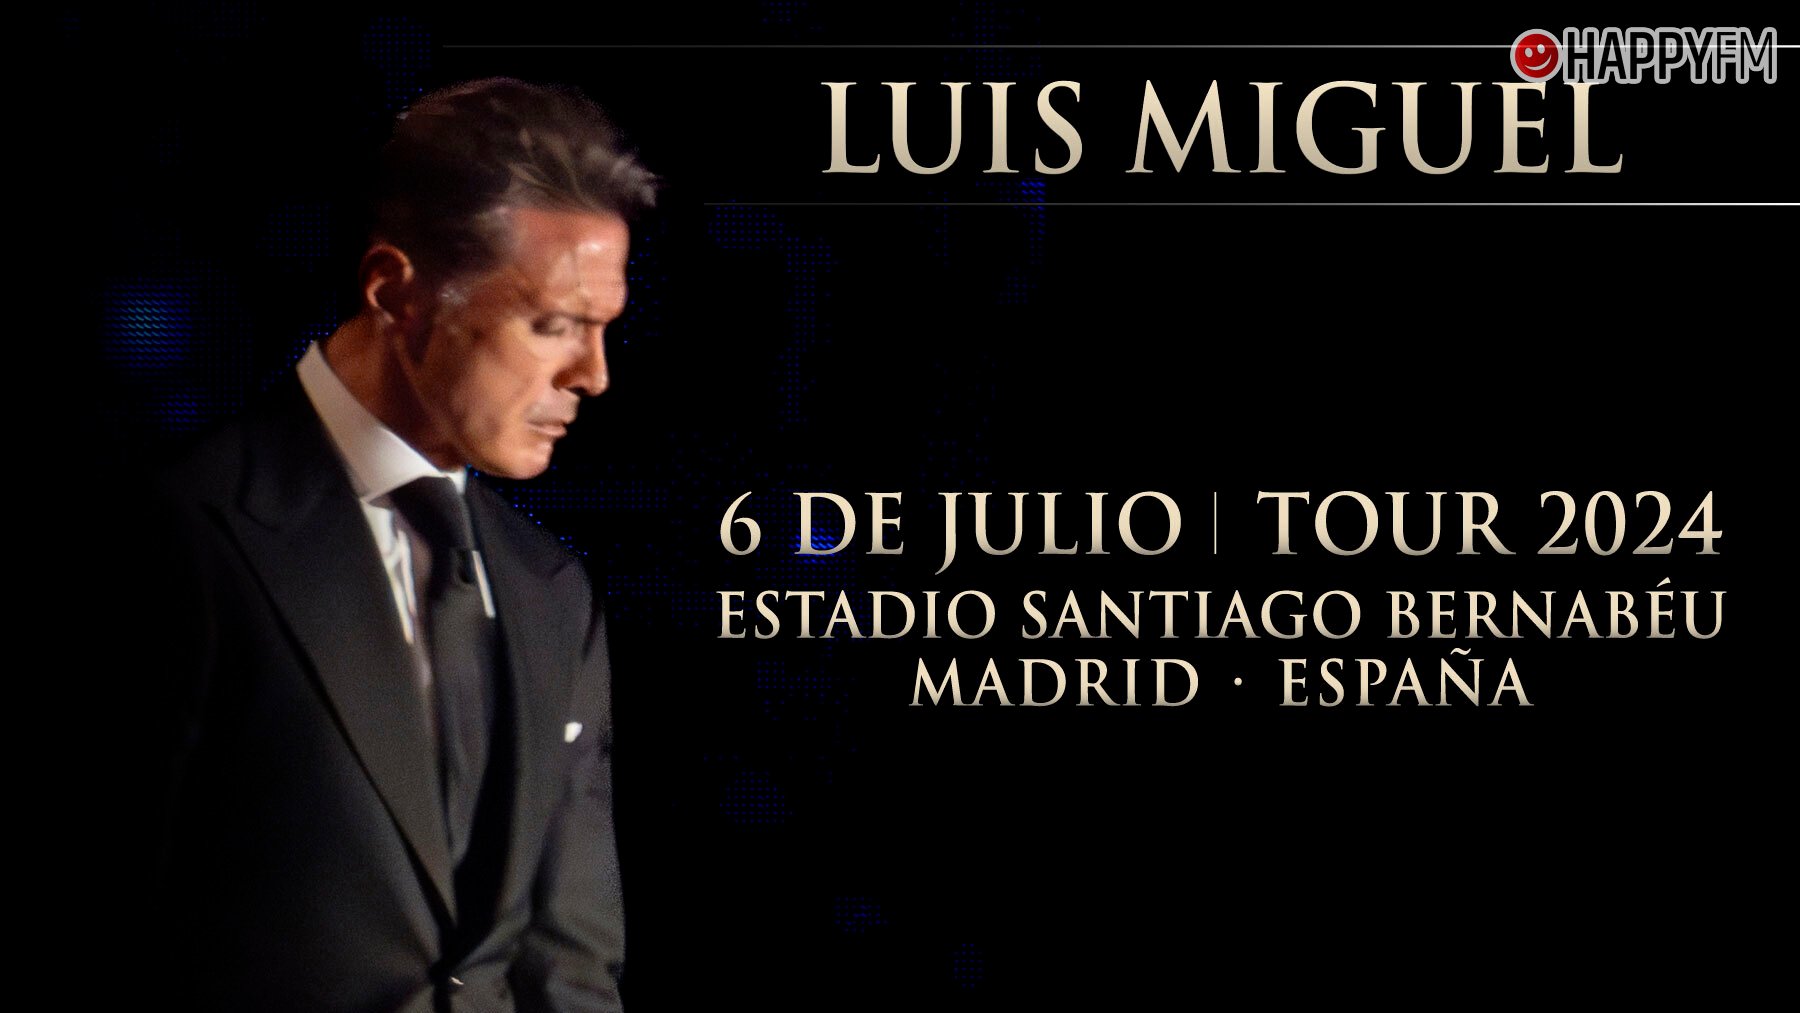 Luis Miguel en Madrid cuándo salen a la venta las entradas del concierto y cómo conseguirlas